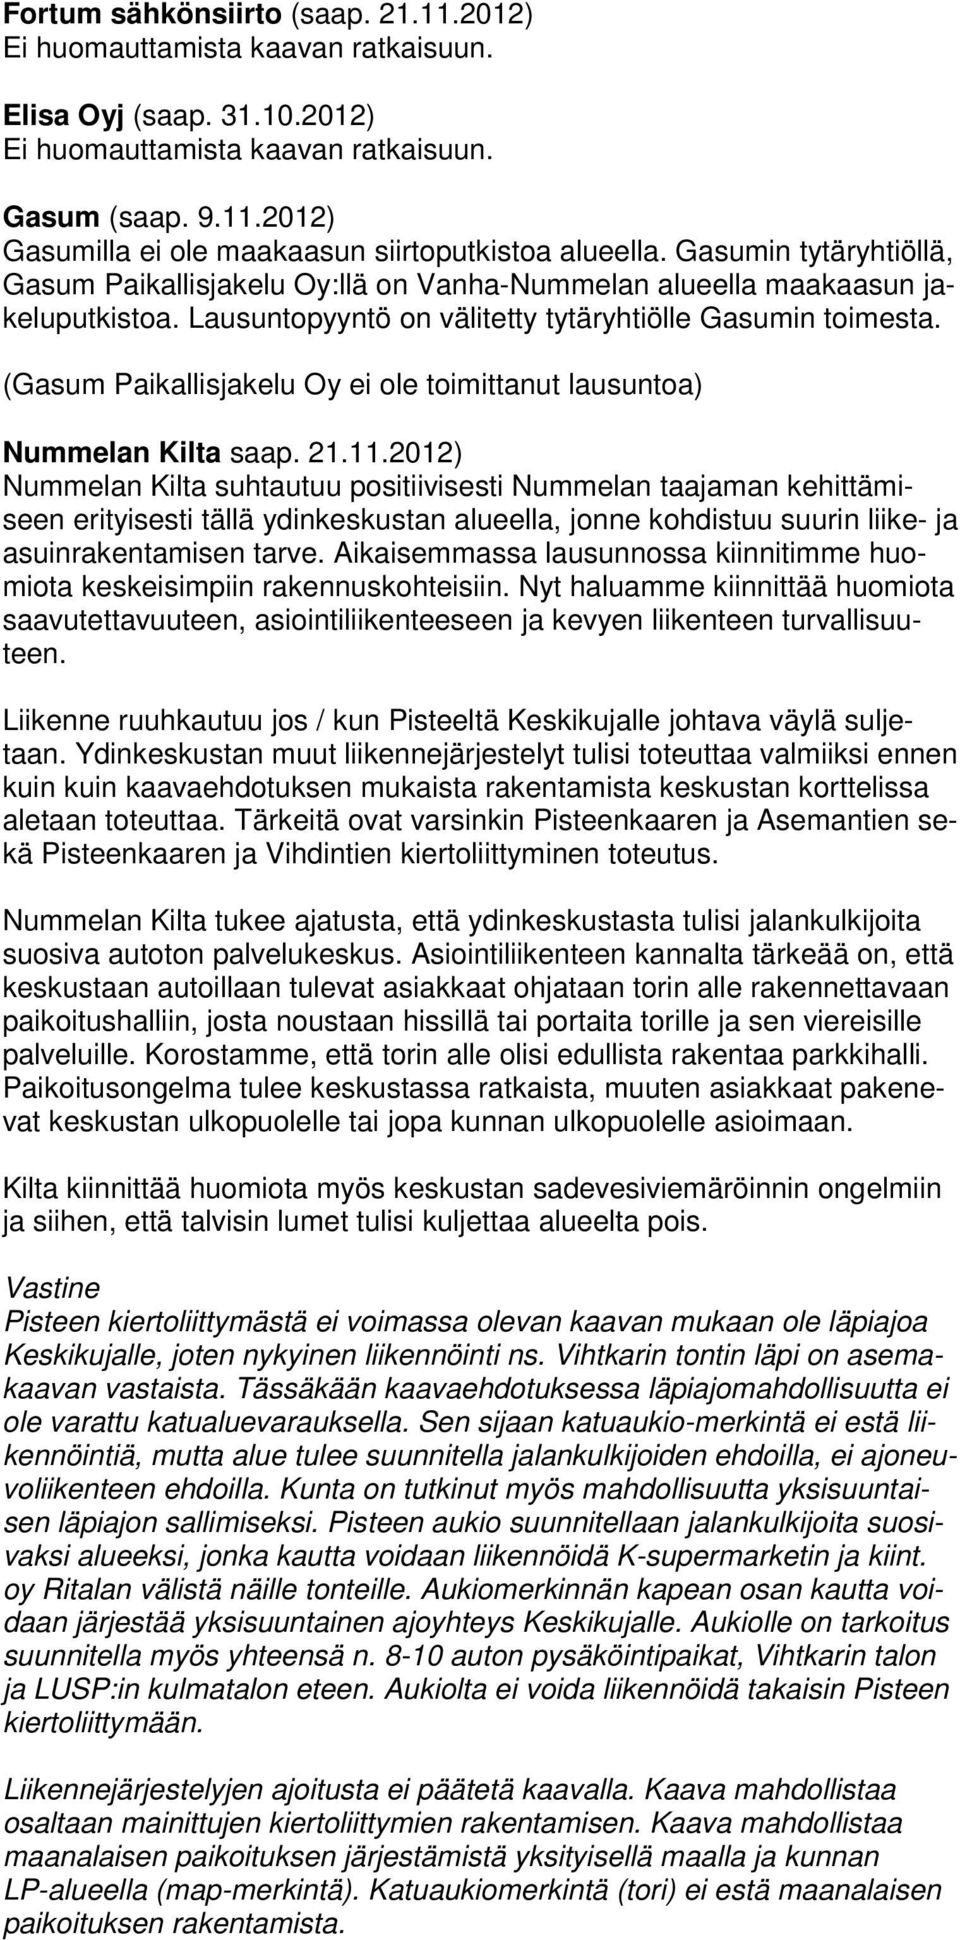 (Gasum Paikallisjakelu Oy ei ole toimittanut lausuntoa) Nummelan Kilta saap. 21.11.